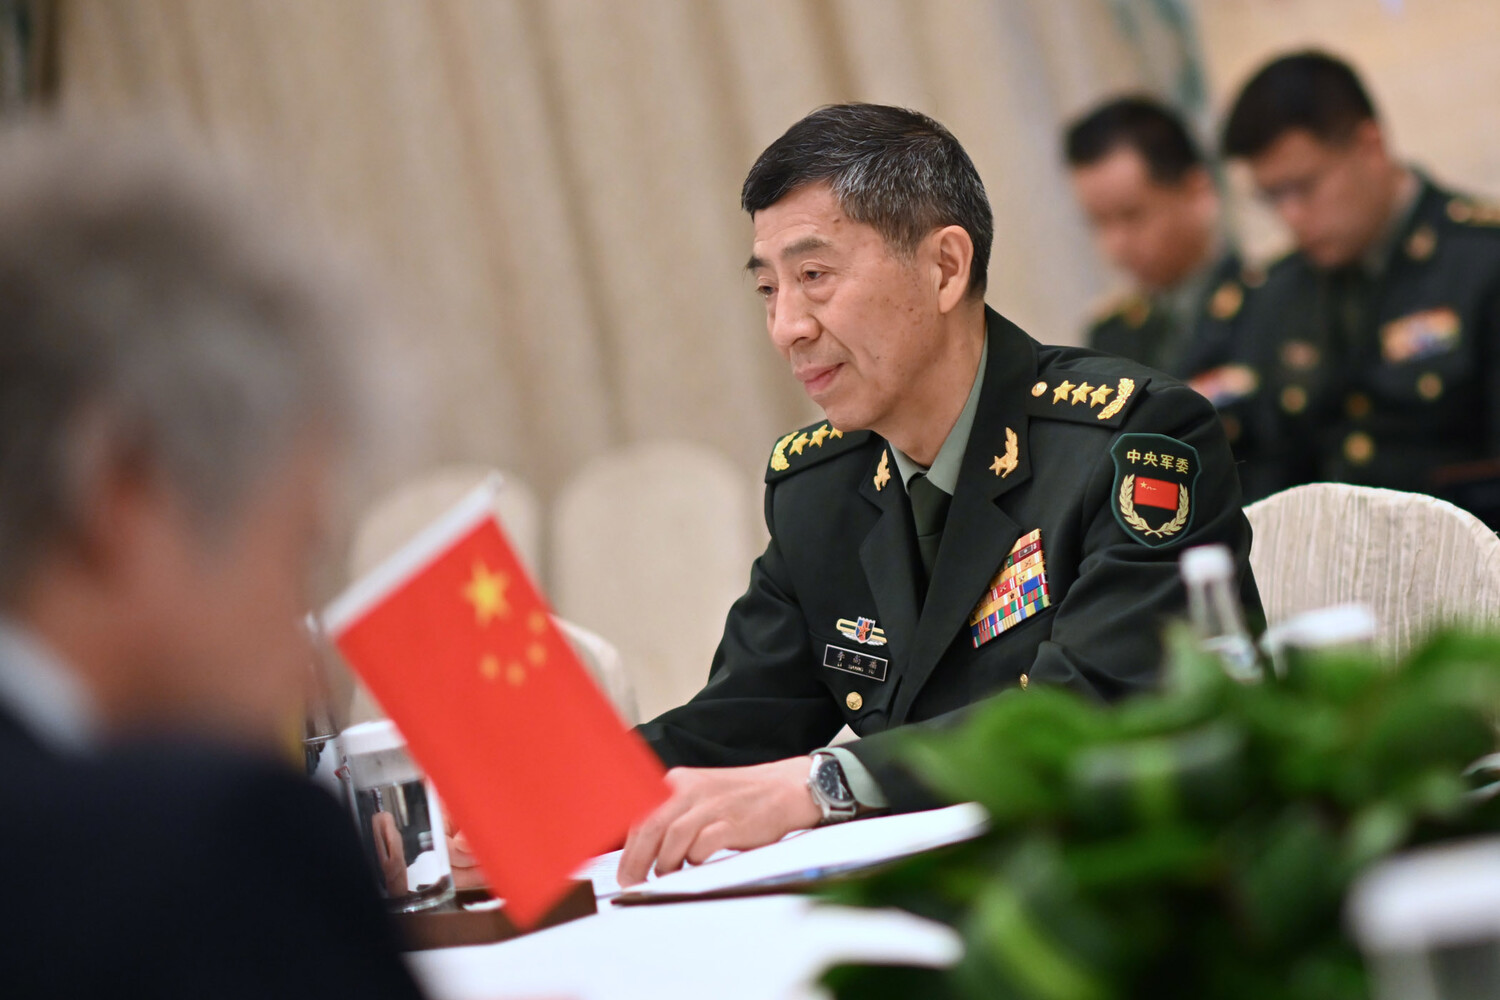 Китай выступает против эксклюзивных военных союзов - глава МО КНР